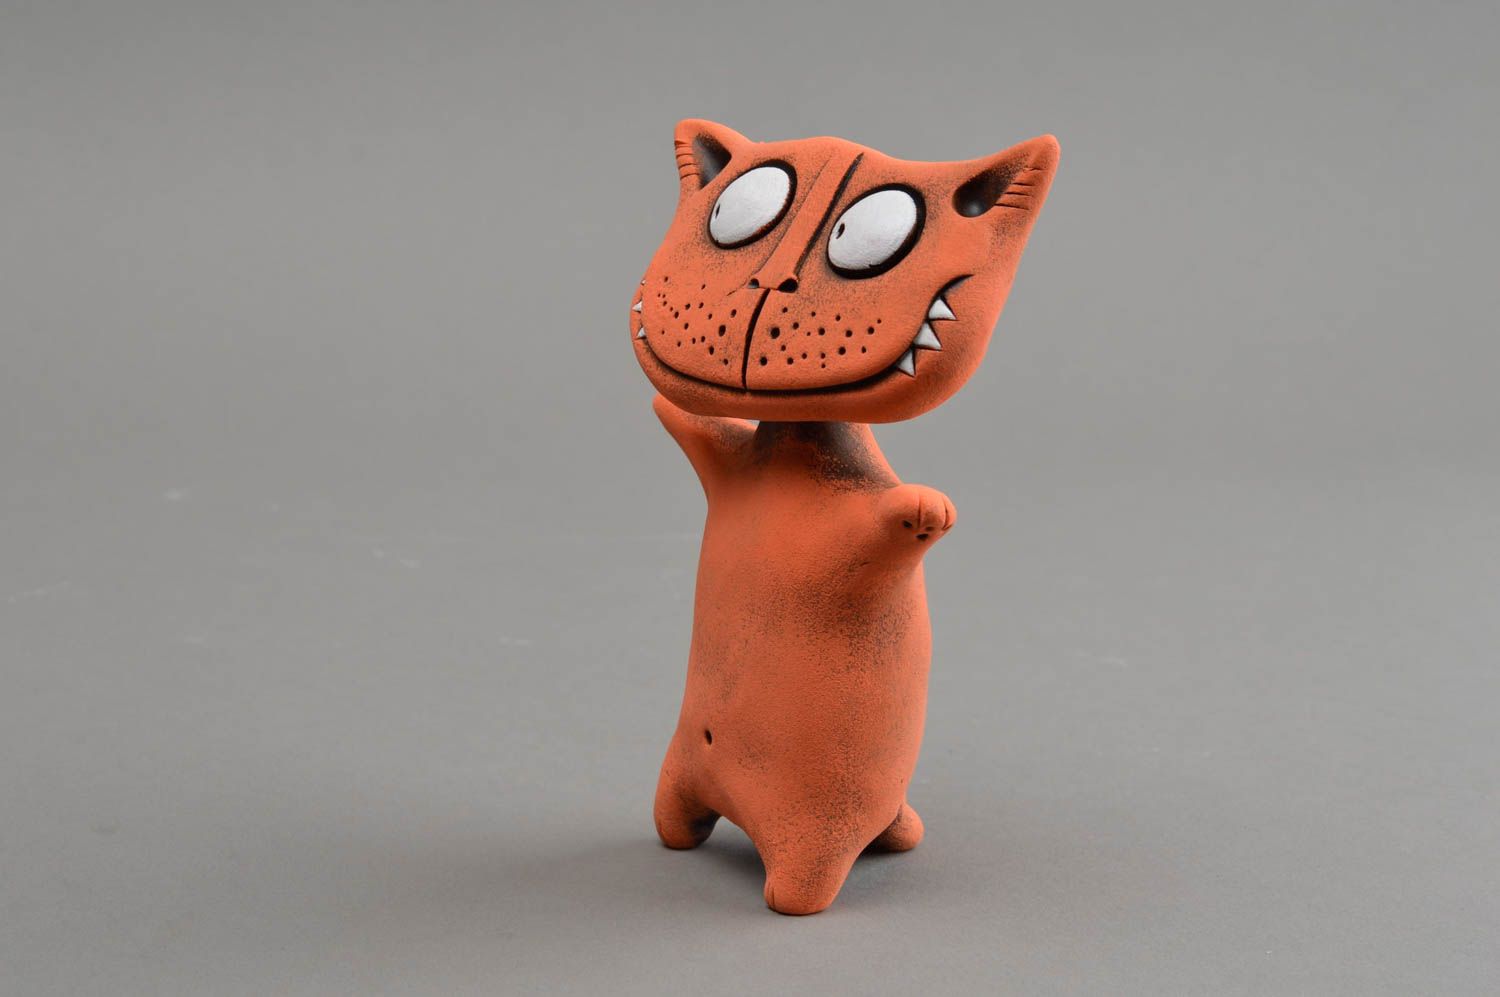 Оранжевая глиняная статуэтка ручной работы в виде кота расписанная красками фото 3